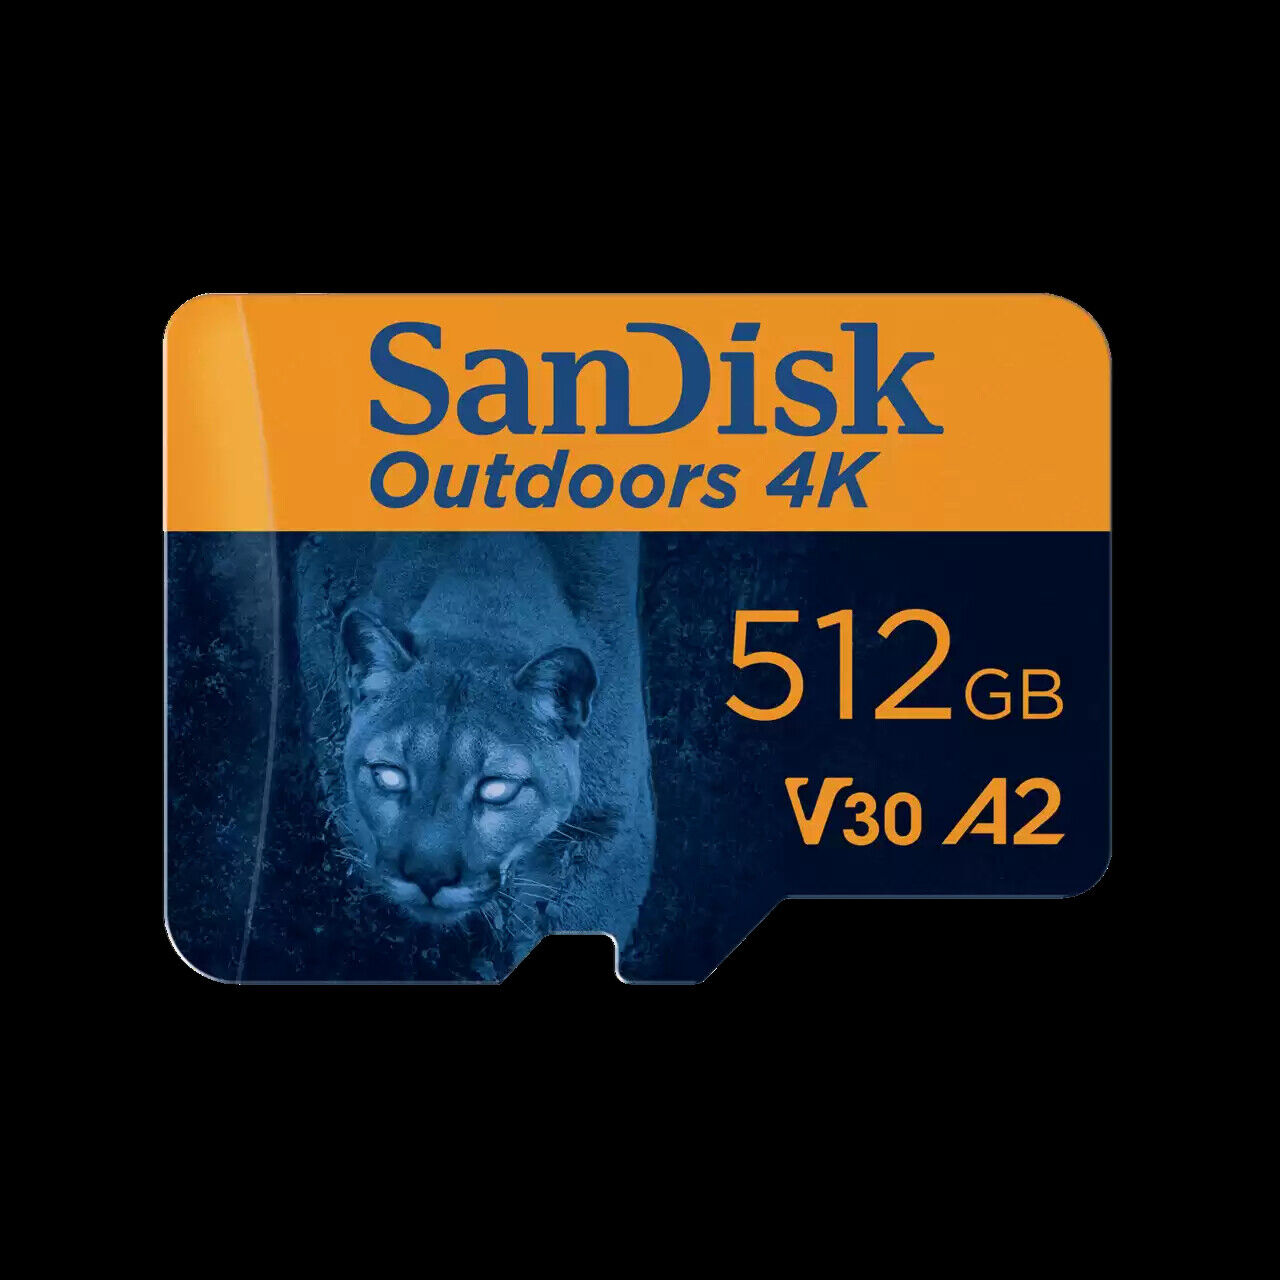 SanDisk 512GB Outdoors 4K microSDXC UHS-I Card w/ SD Adapter SDSQXAV-512G-GN6VA